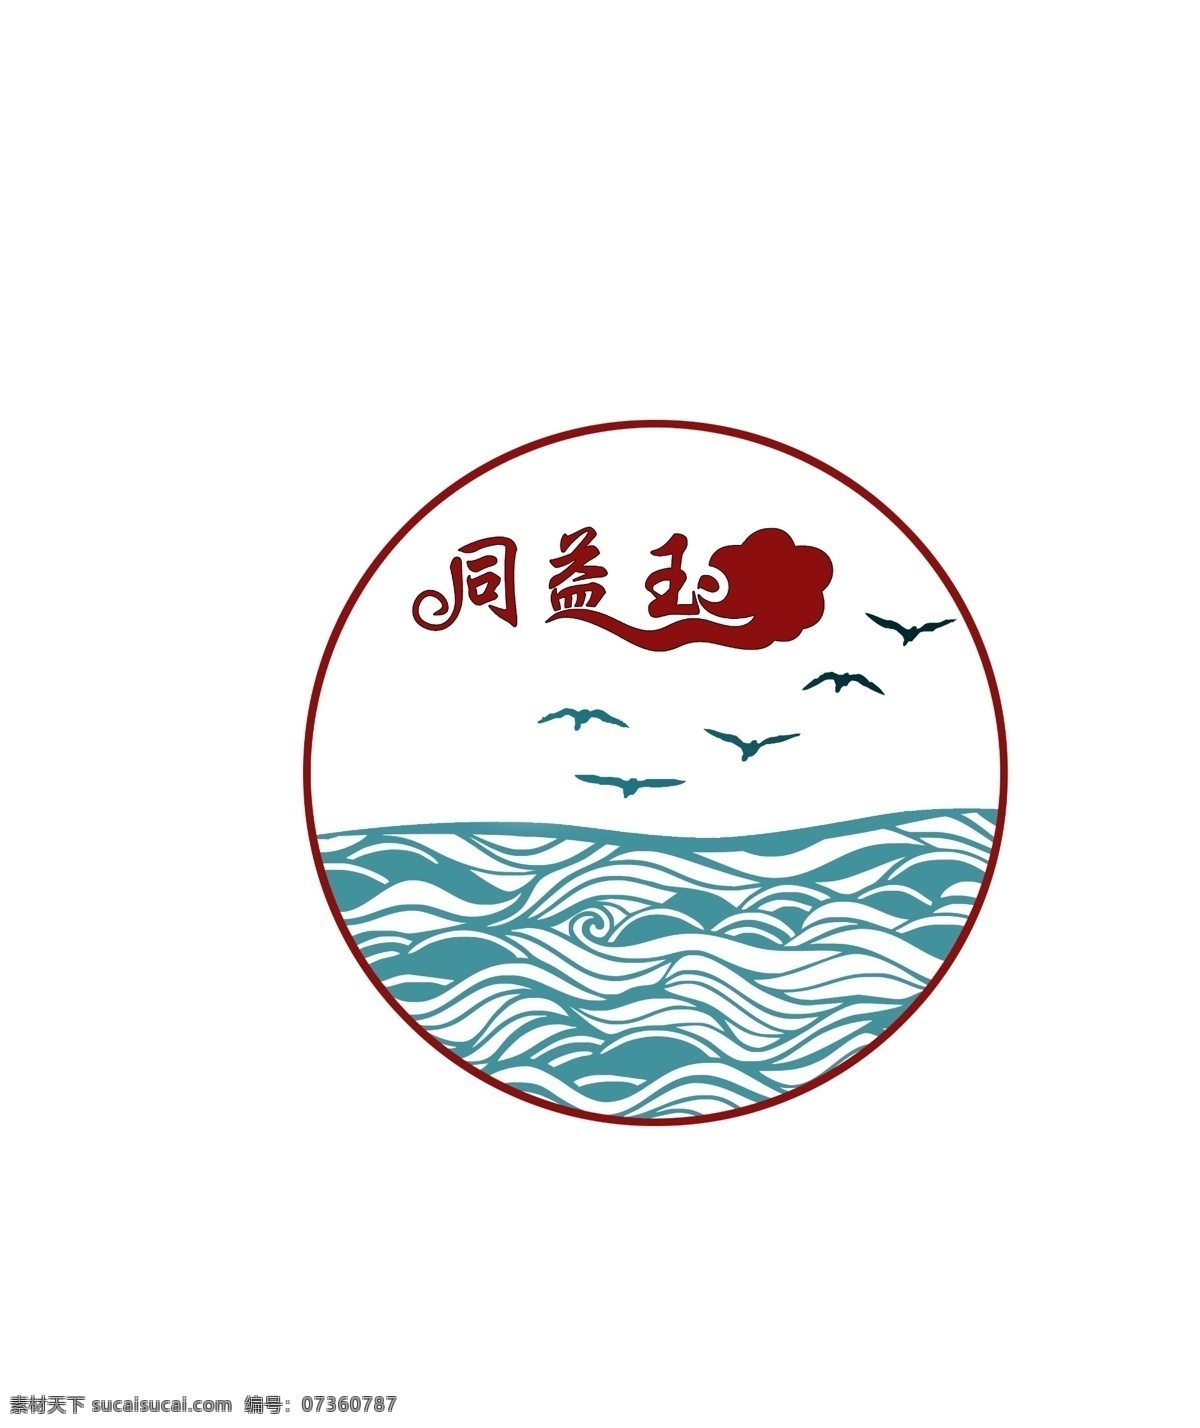 大雁logo 图标制作 徽章 大雁 logo 图标 普洱茶 白色